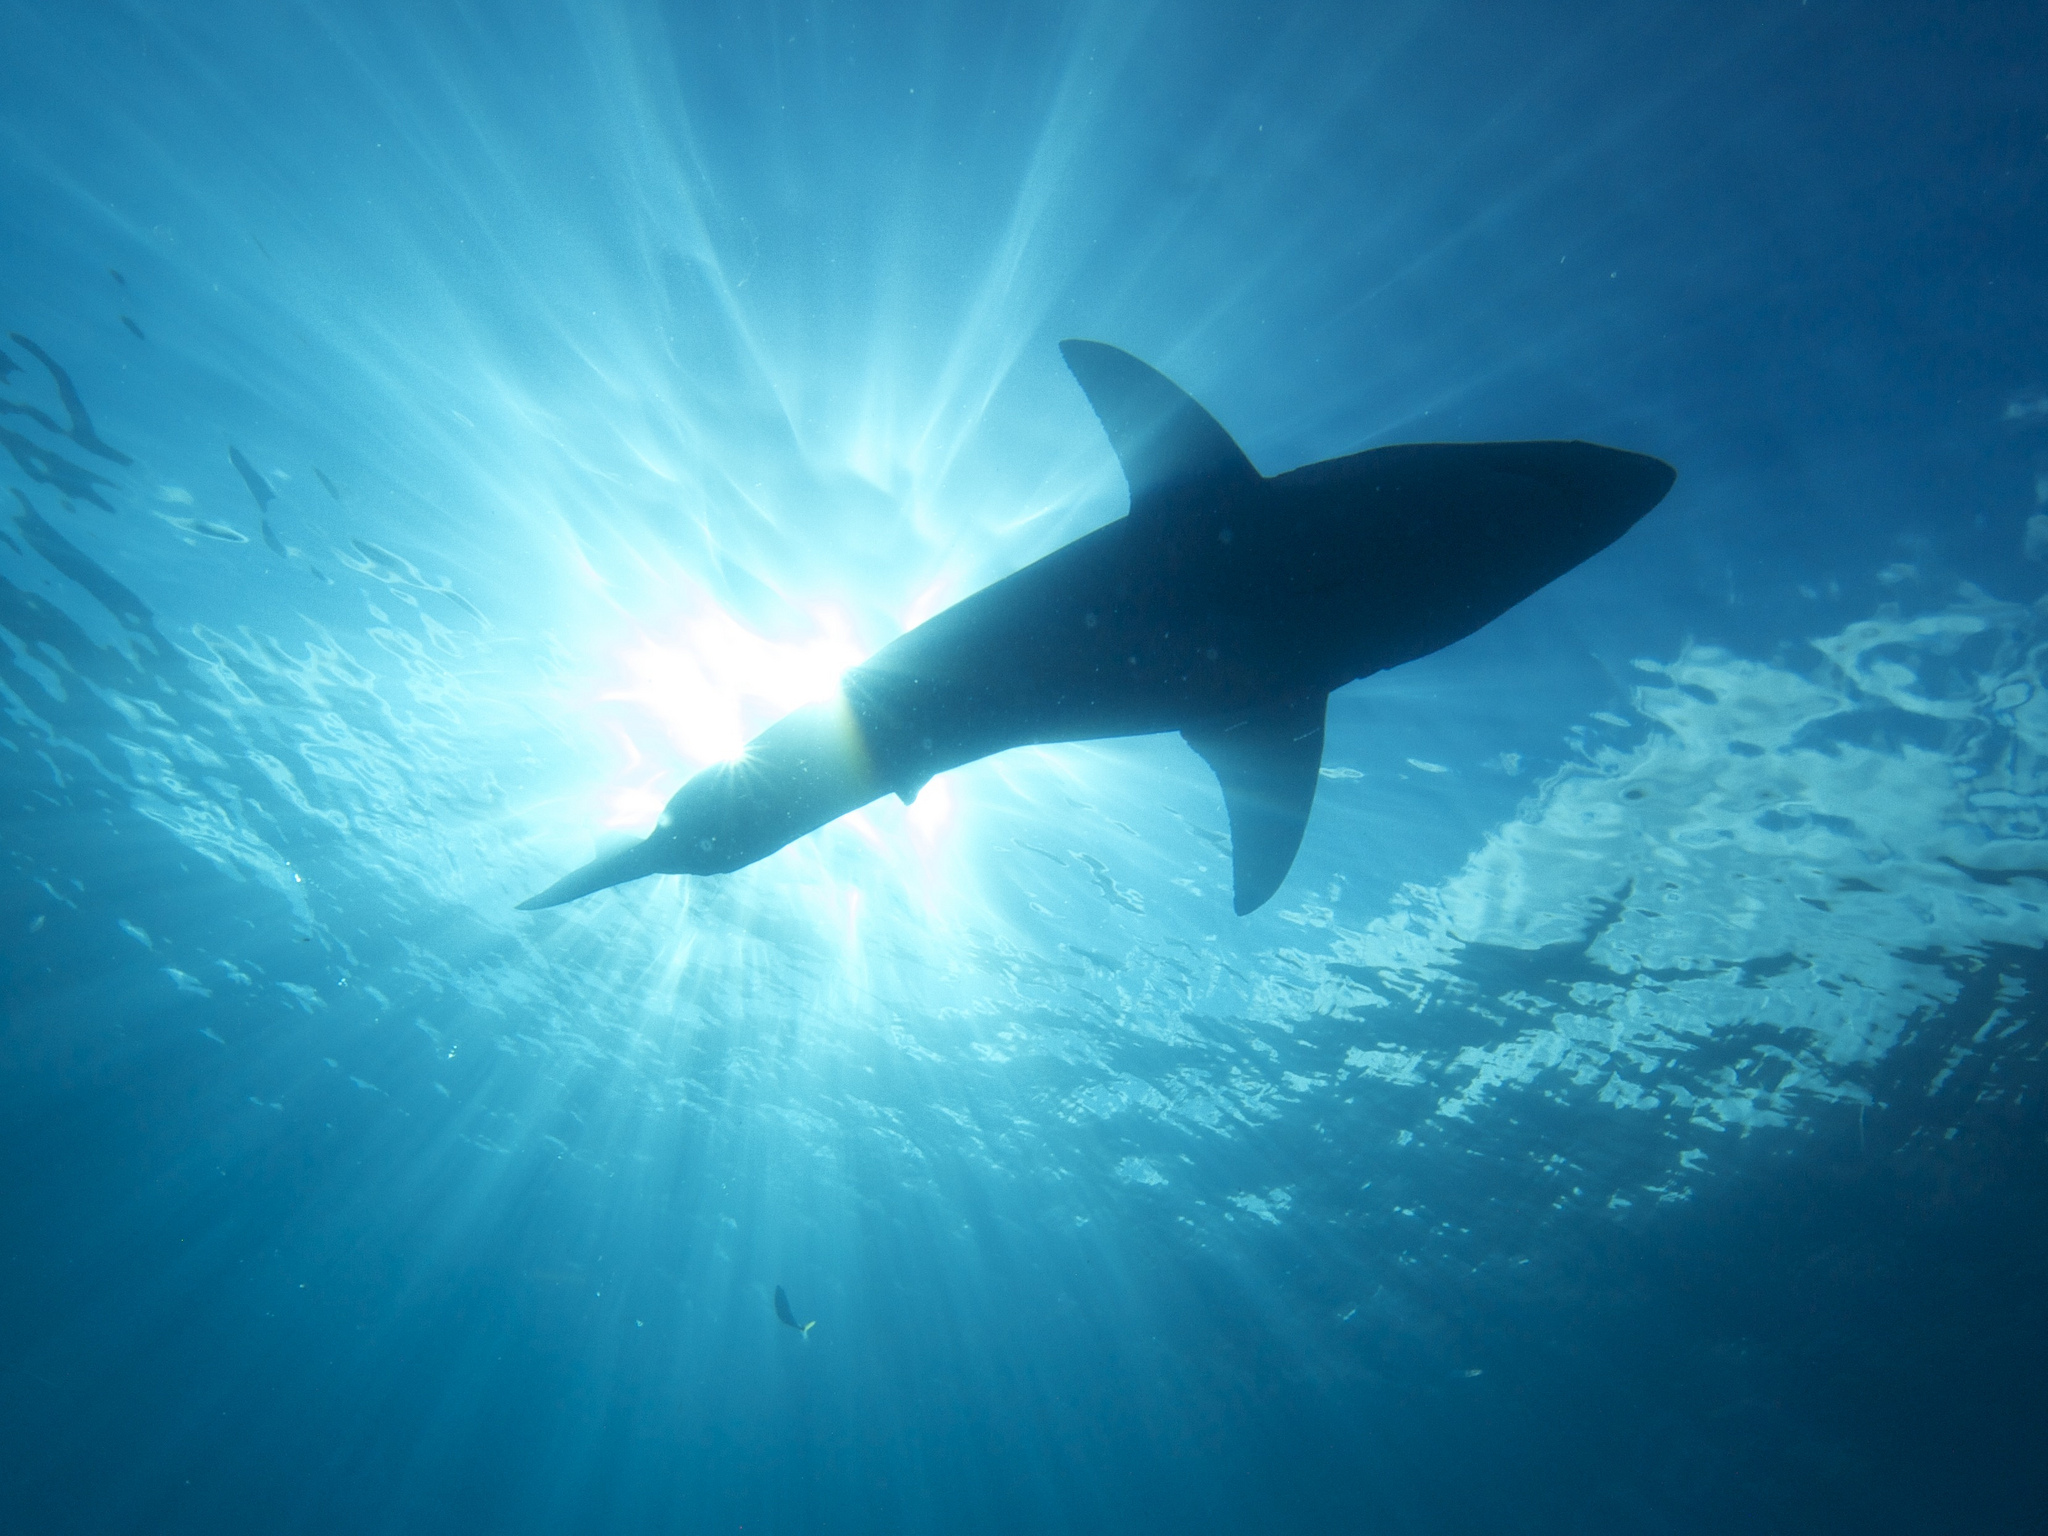 Le requin affectionne les eaux peu profondes. © Elias Levy, flickr, cc by 2.0 

